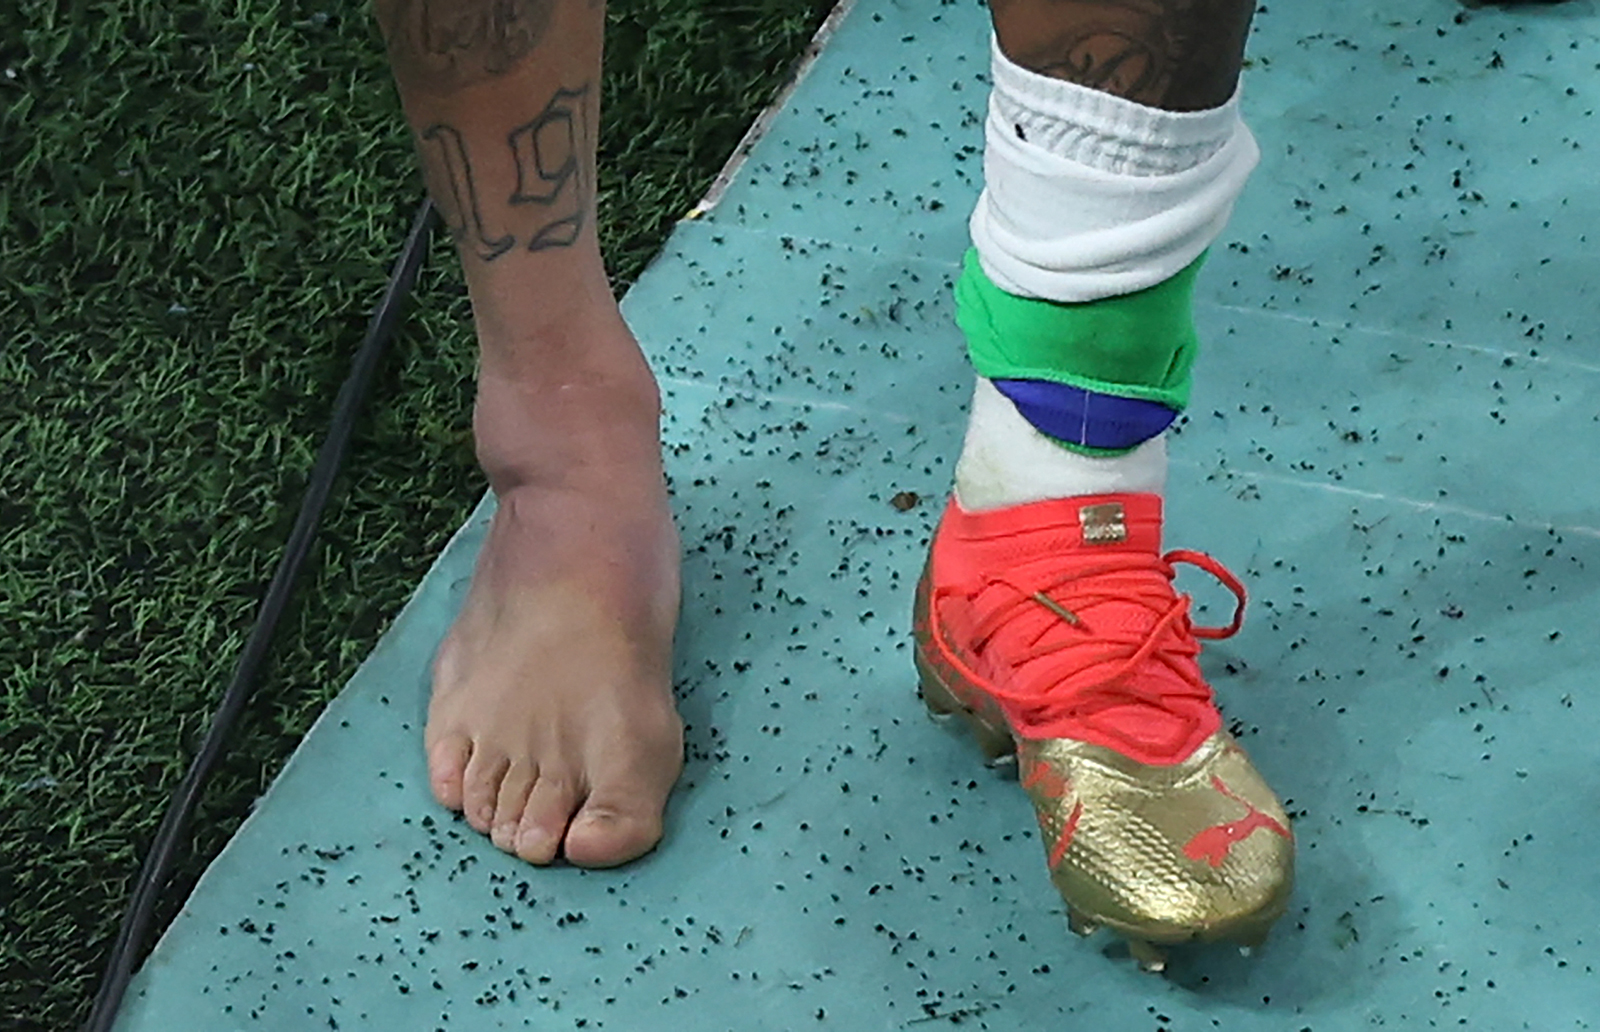 Neymar's swollen ankle as he leaves the field.